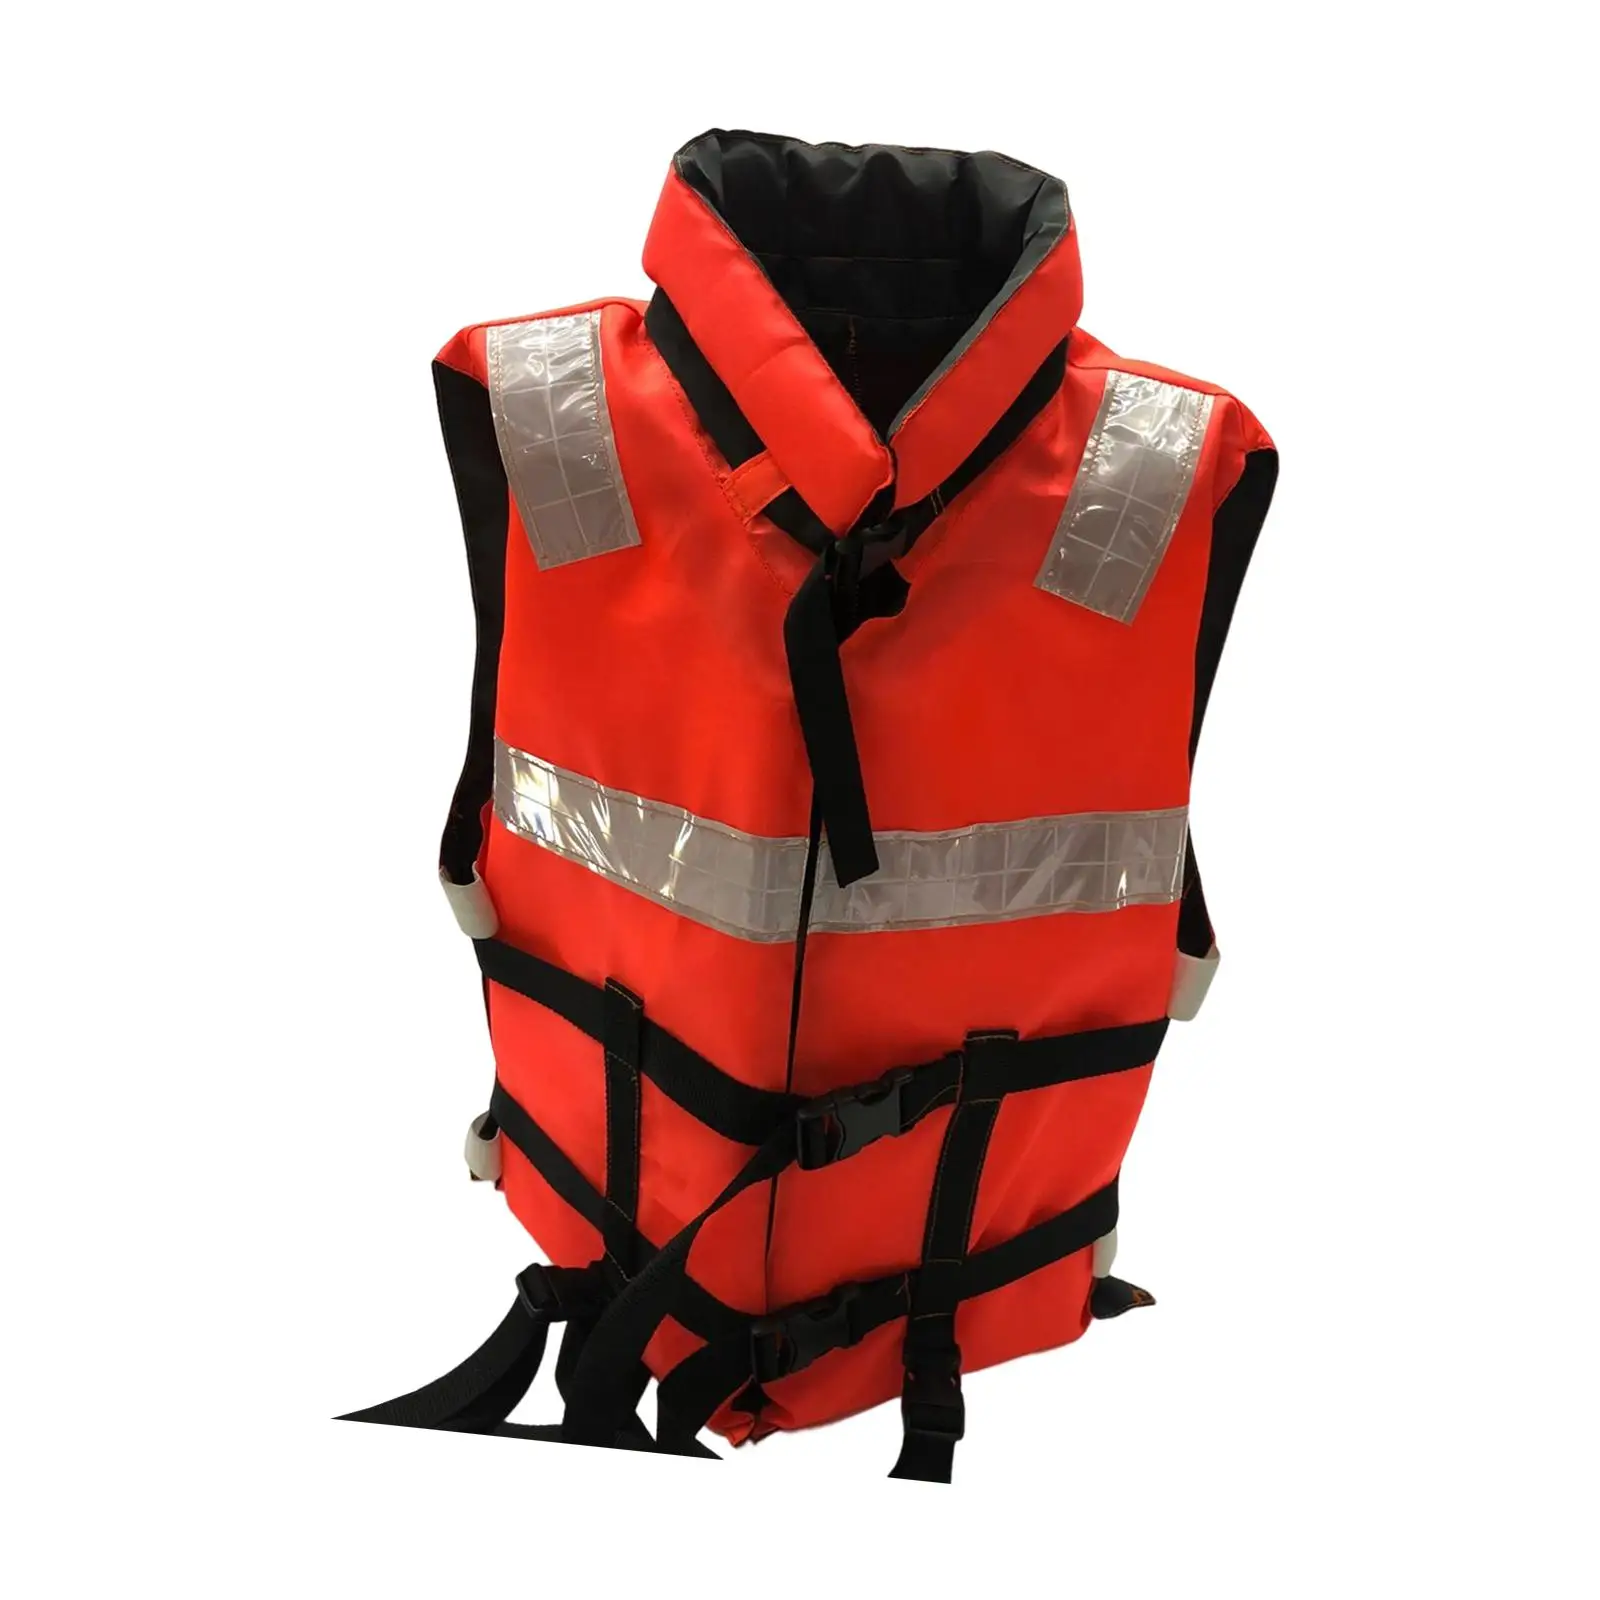 Orange Life Jackets Kayaking Paddle Board Buoyancy Aid Adjustable Elastic and Soft Fabric